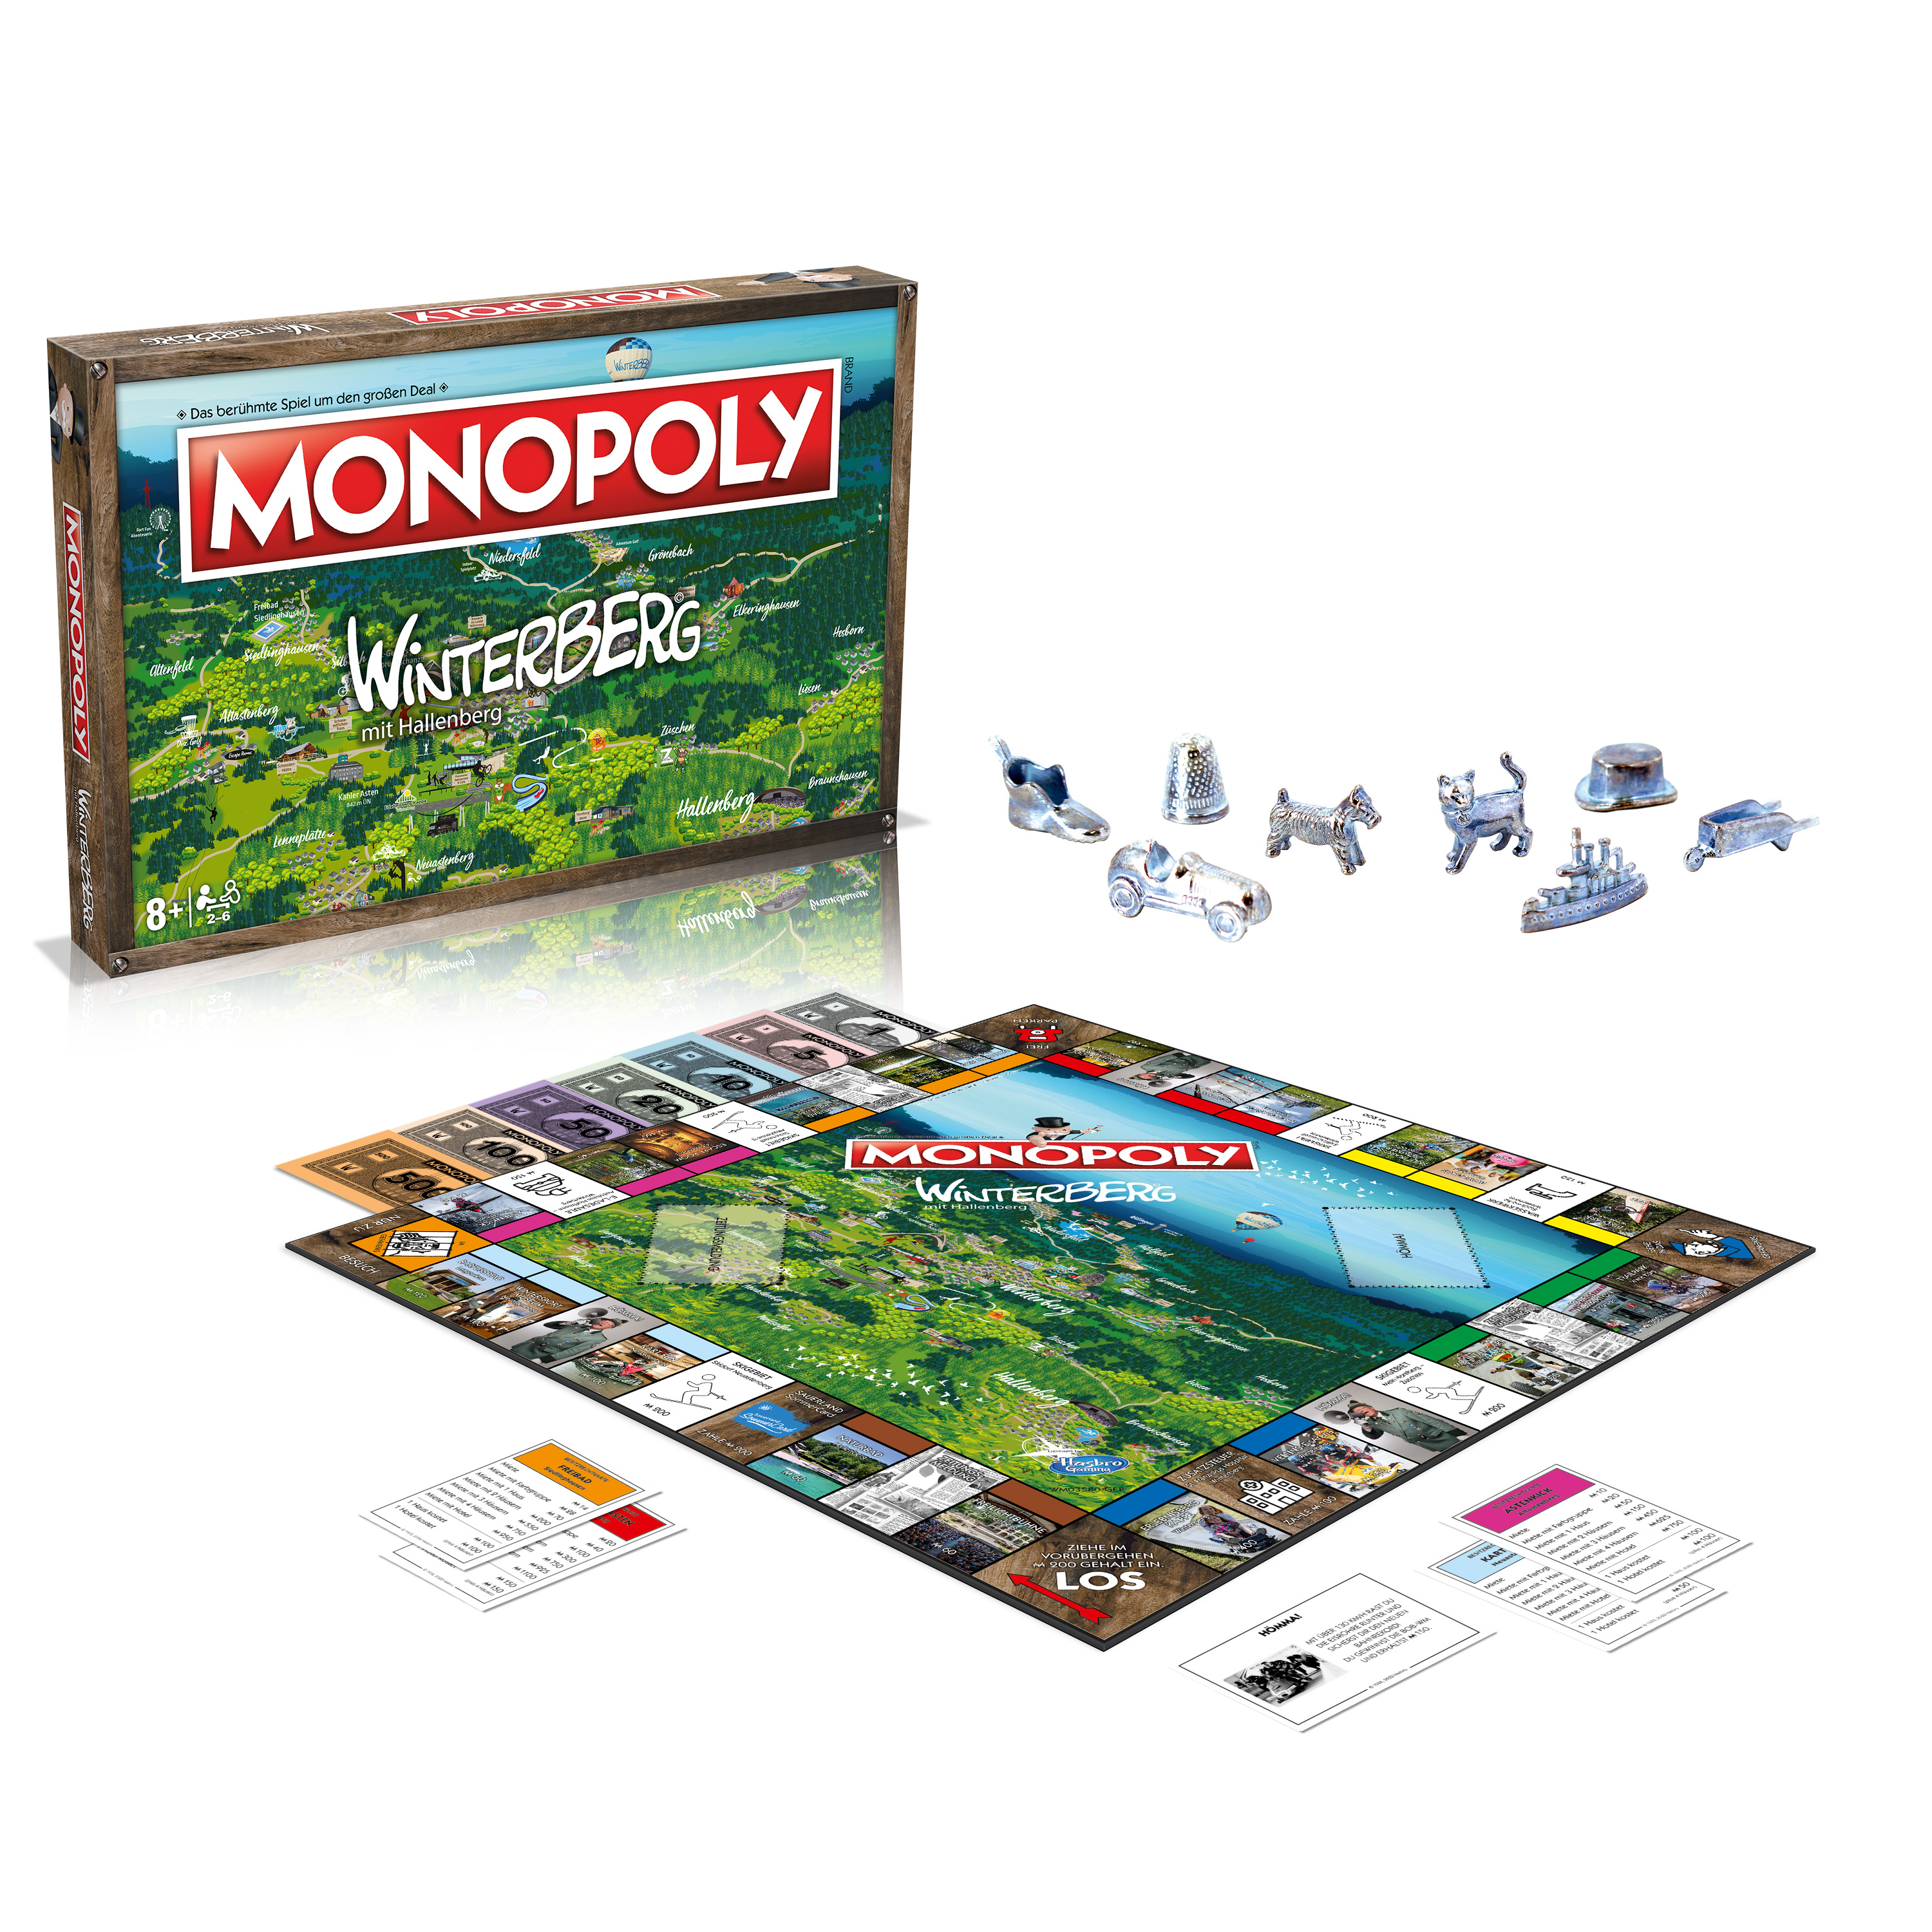 Monopoly Brettspiel Winterberg MOVES - WINNING